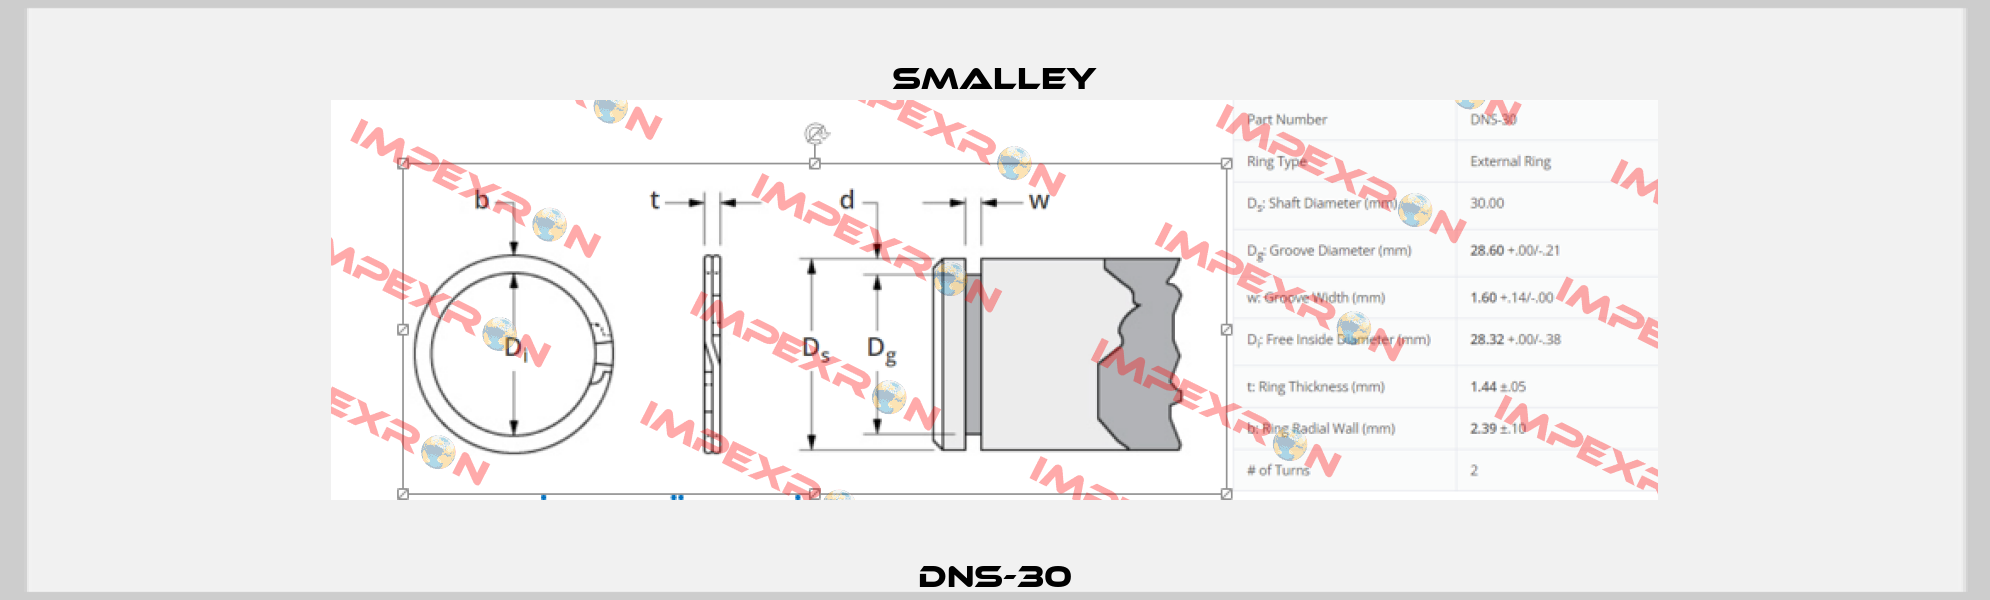 DNS-30 SMALLEY